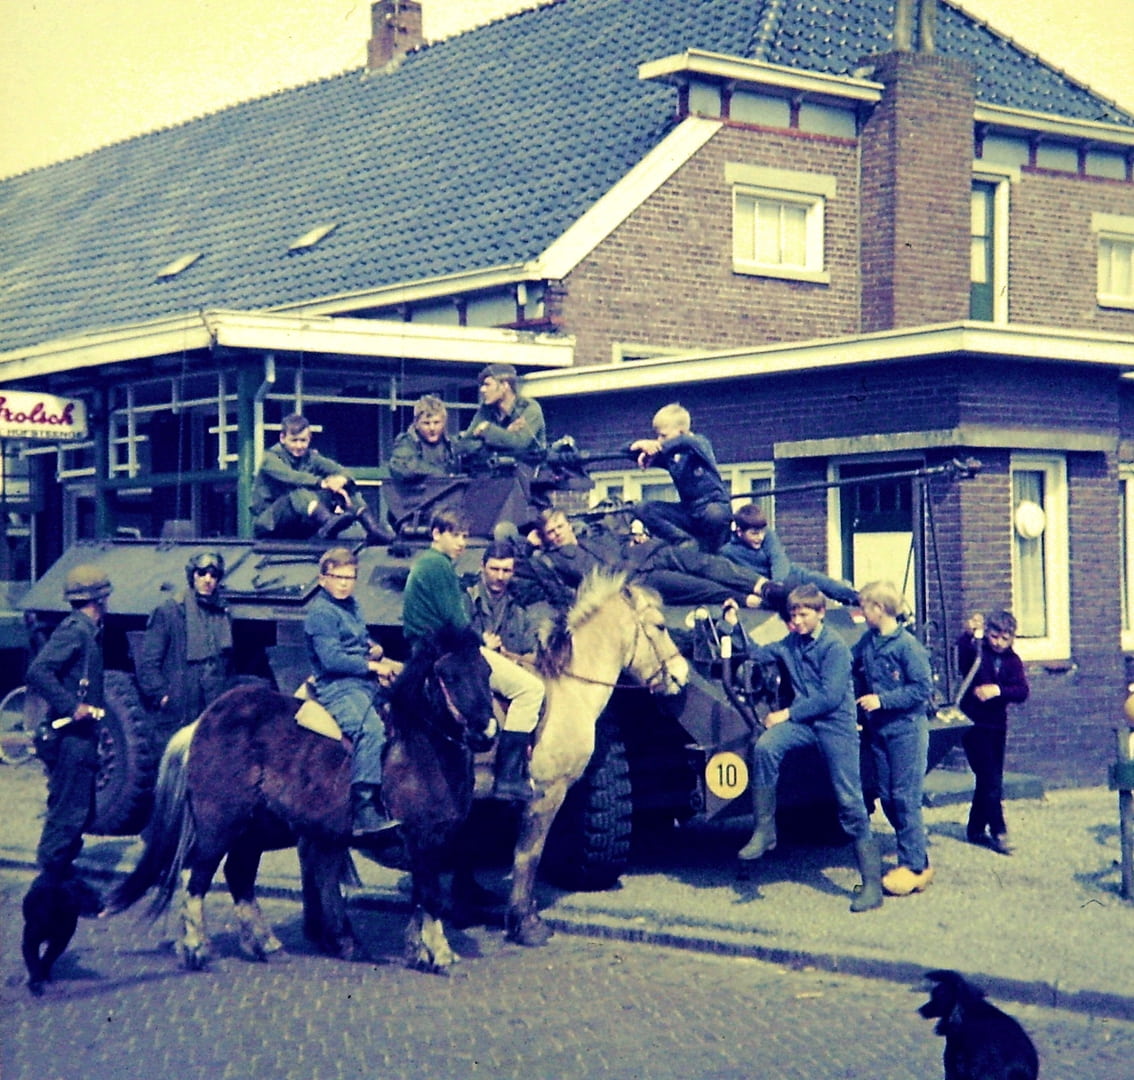 Bert Warringa op zwarte pony "Nico" groene sweater kon Henk Beijering wel eens zijn, Henk Kuipers Amerweg en Henk Kuipers Voorstreek, die jongen met de laarzen is volgens mij een kleinzoon van Jantien Pepping. Met de klompen Roelof Naber en de jongen rechts lijkt op Jan Hendriks.